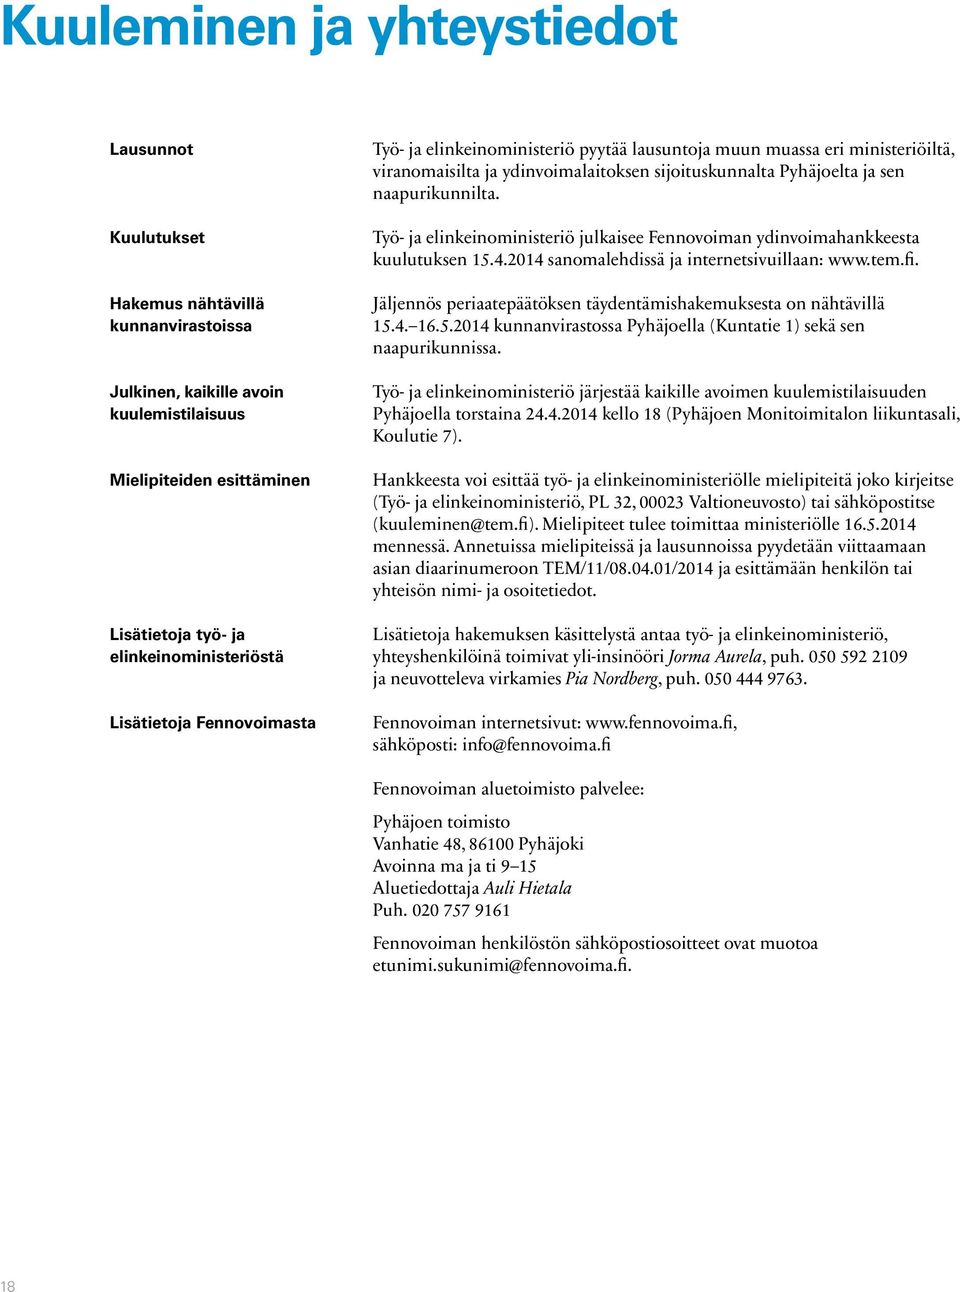 Työ- ja elinkeinoministeriö julkaisee Fennovoiman ydinvoimahankkeesta kuulutuksen 15.4.2014 sanomalehdissä ja internetsivuillaan: www.tem.fi.